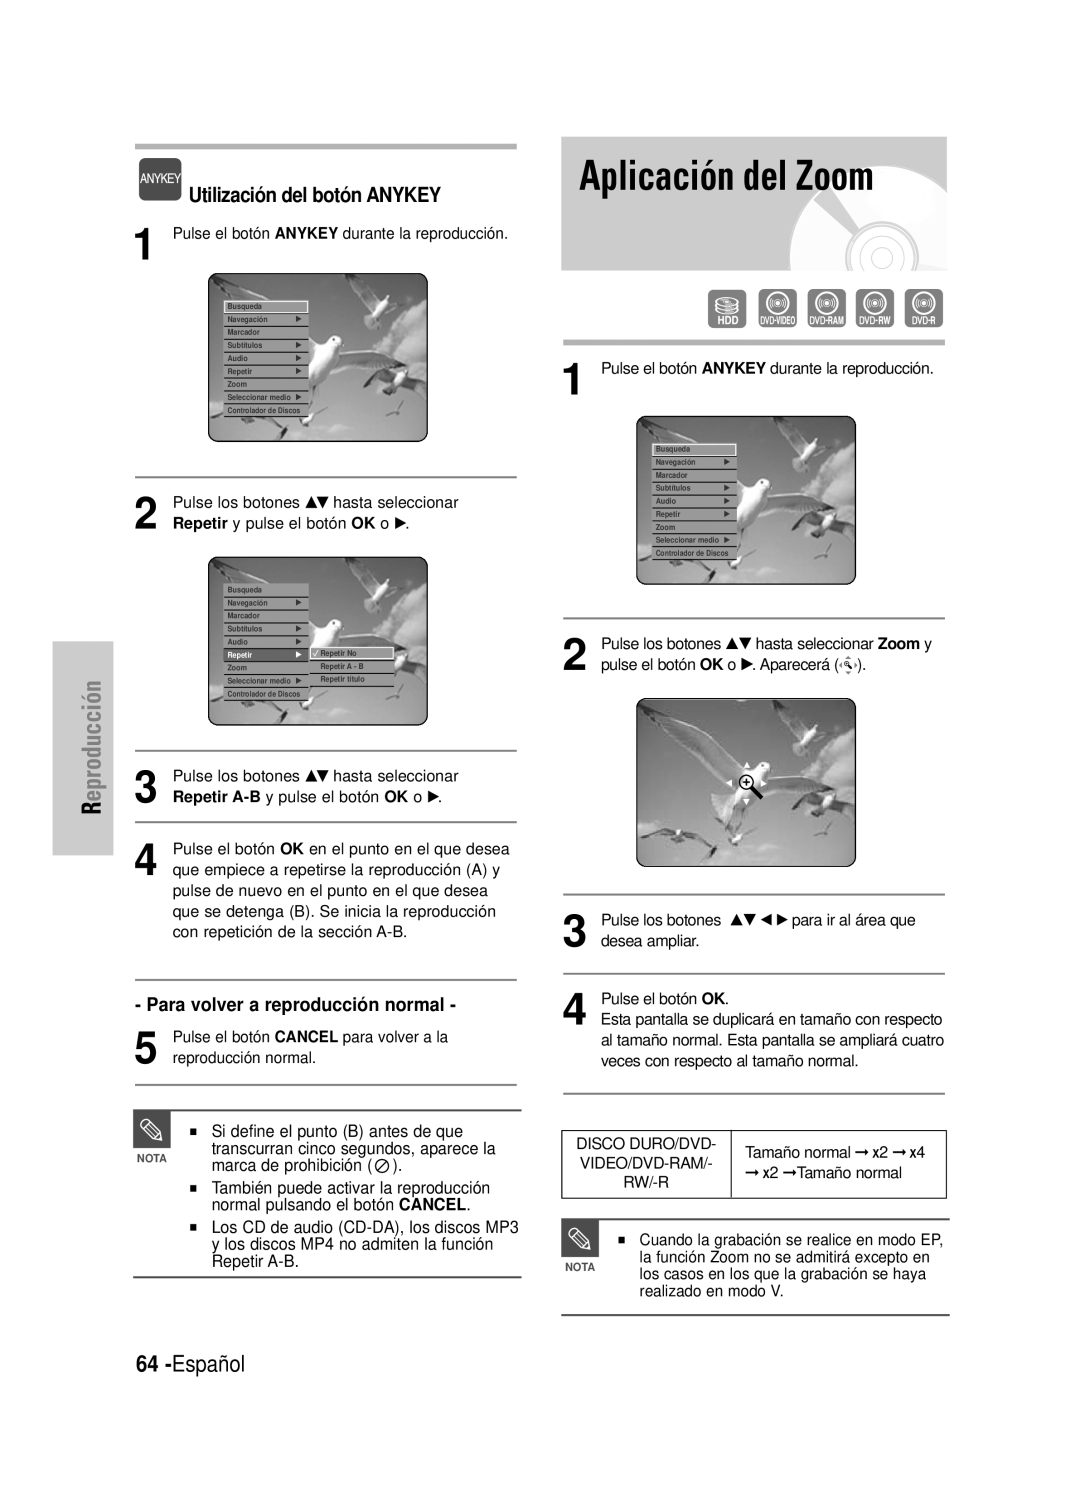 Samsung DVD-HR725/XEB manual Aplicación del Zoom, Español, Utilización del botón ANYKEY, Si define el punto B antes de que 